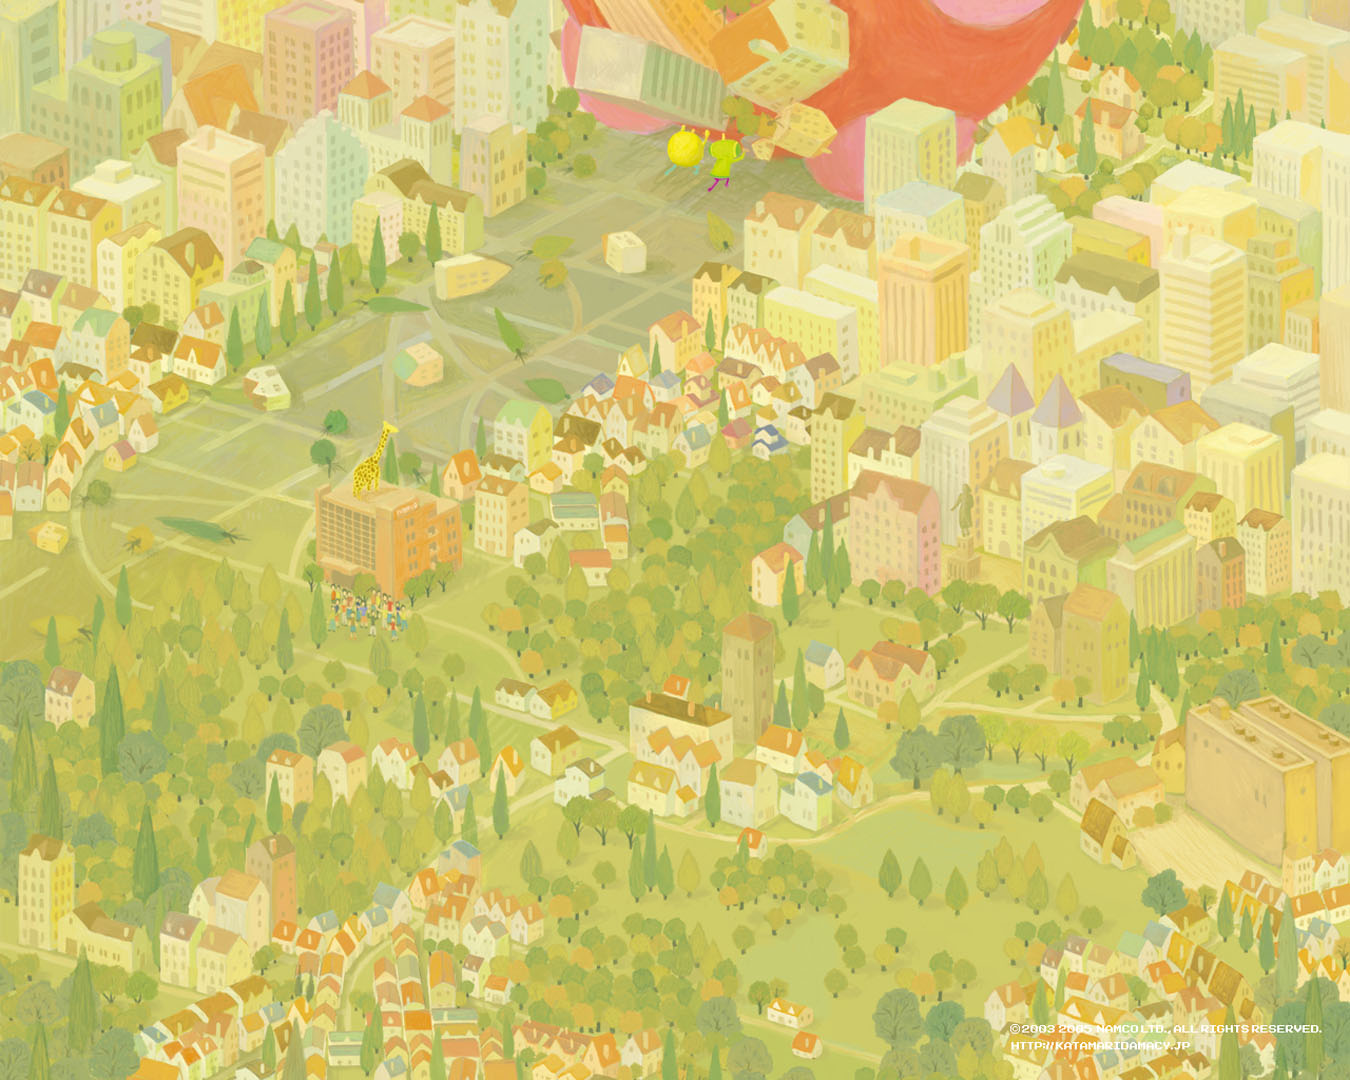 World - Action Games Wallpaper Image featuring Katamari Damacy